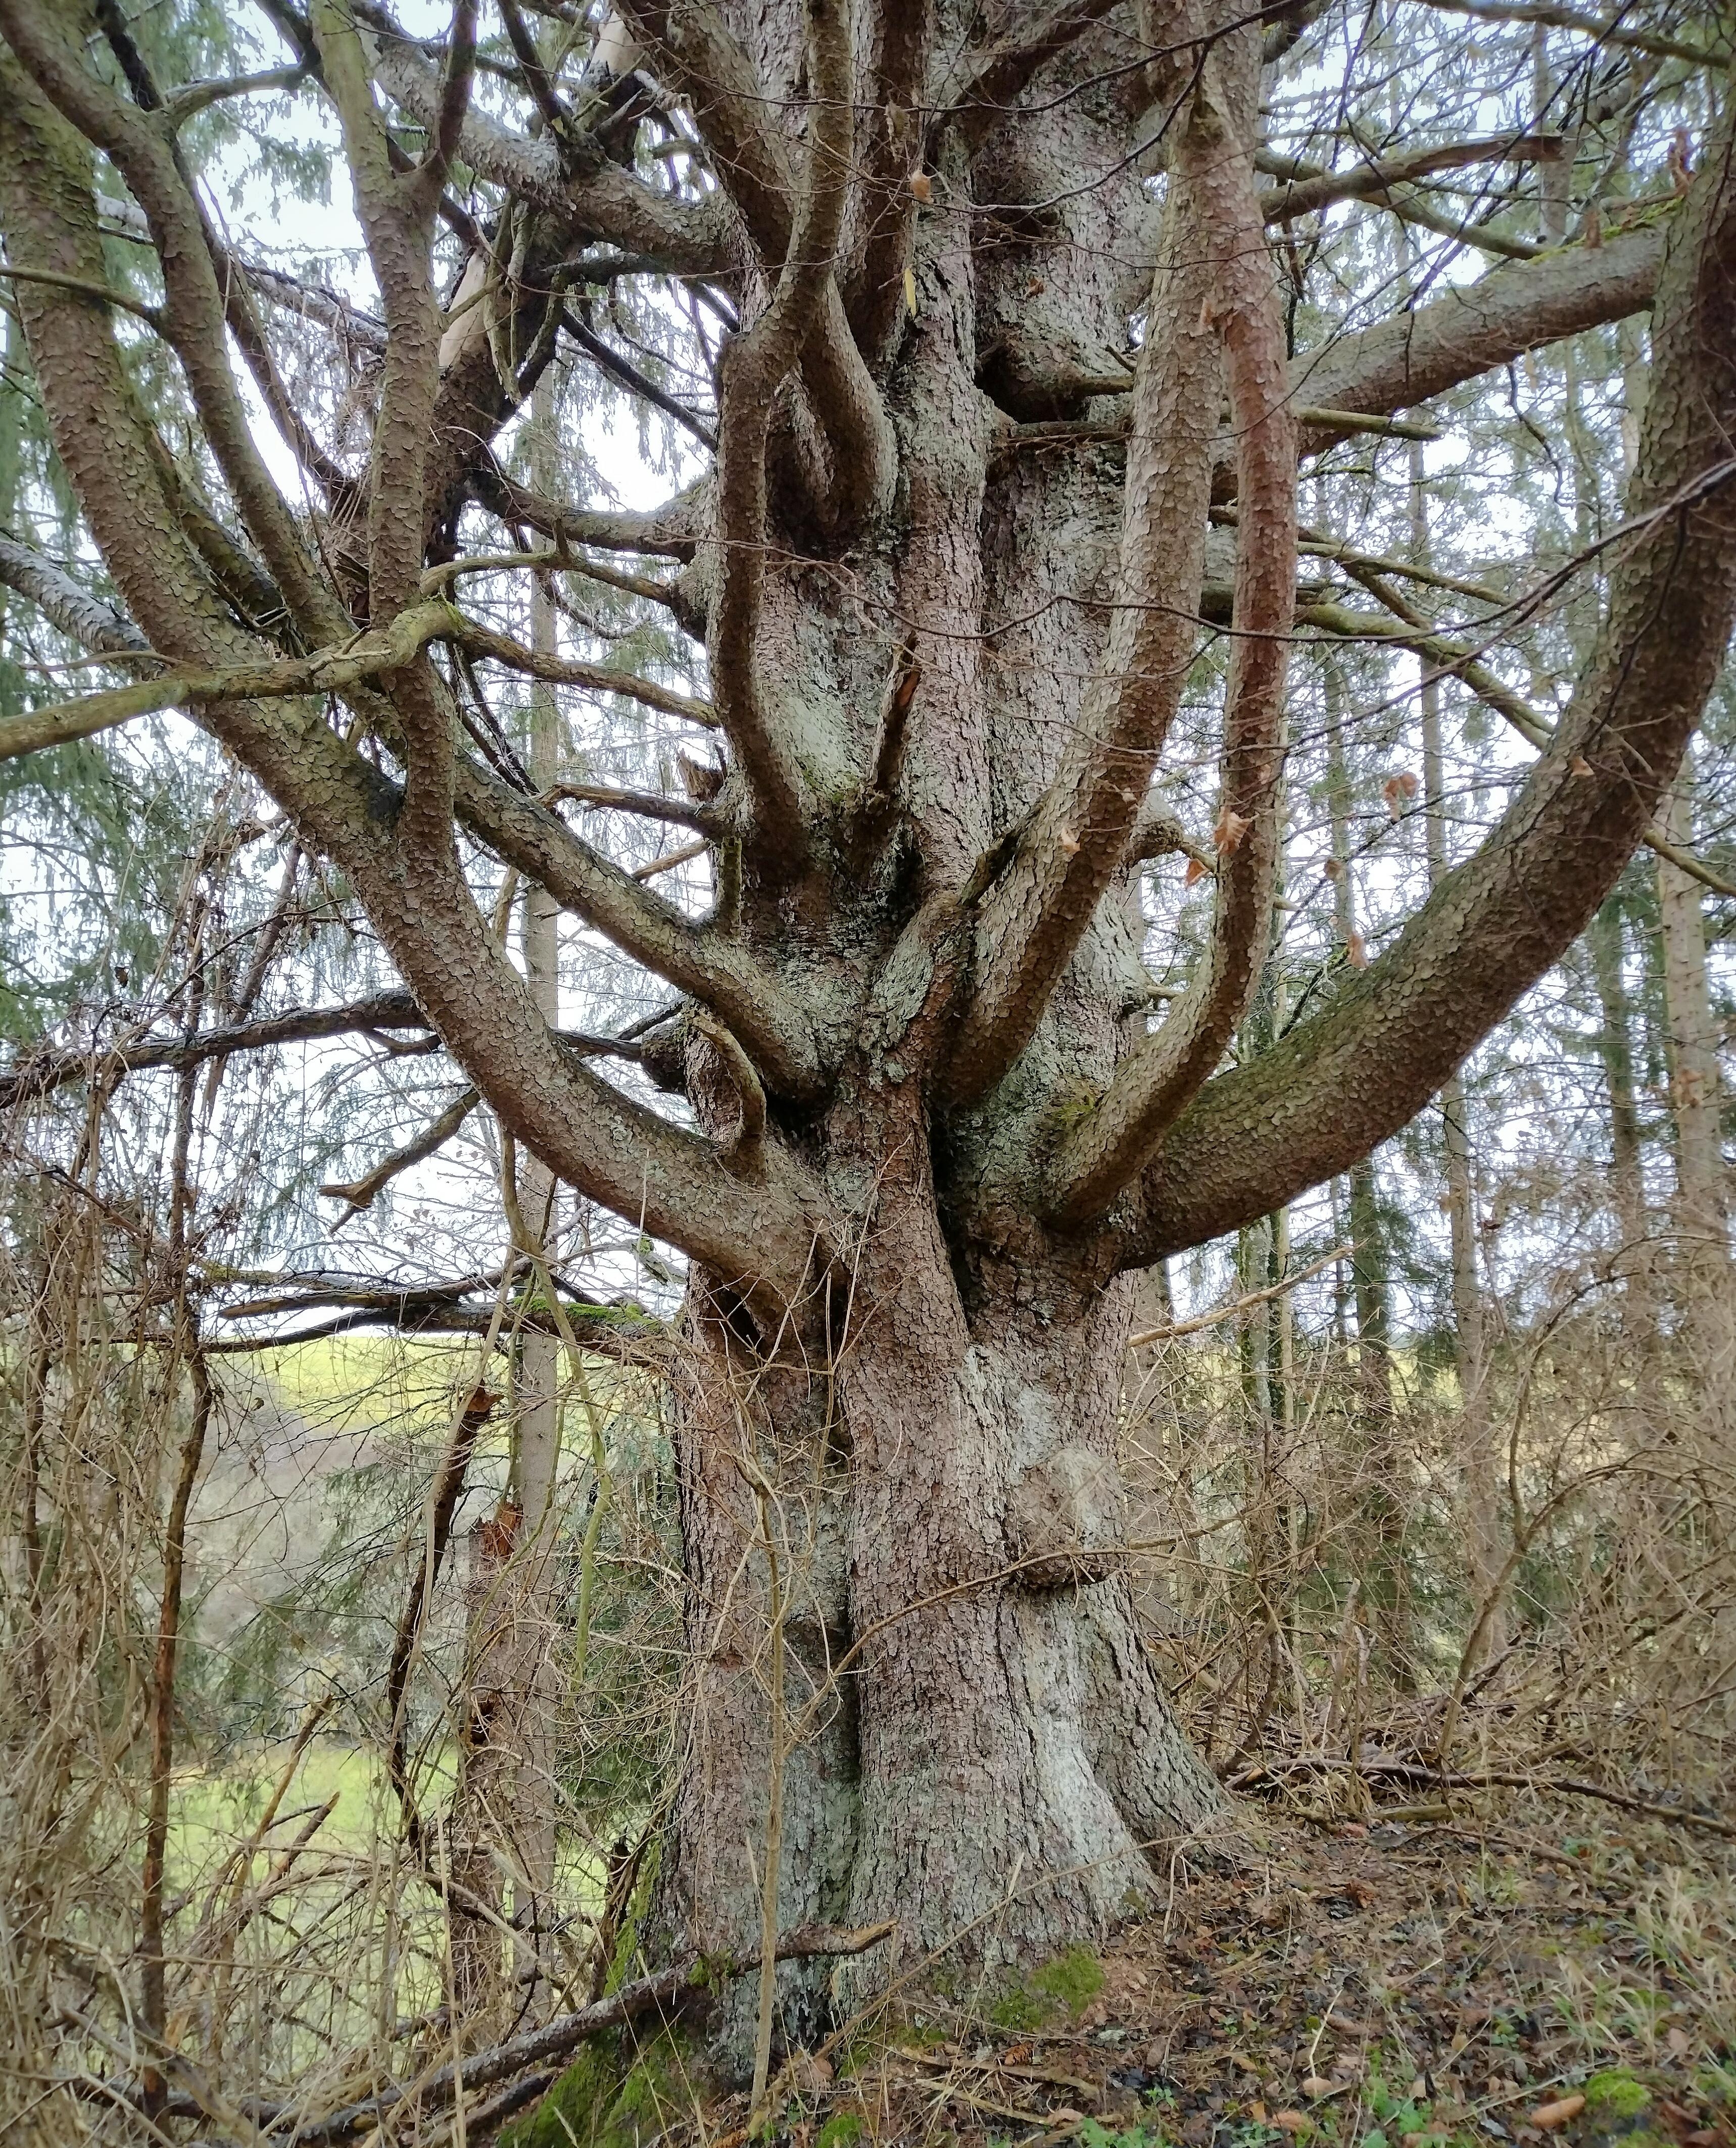 Uralter Baum 🌲
#baum #tanne #natur #naturliebe